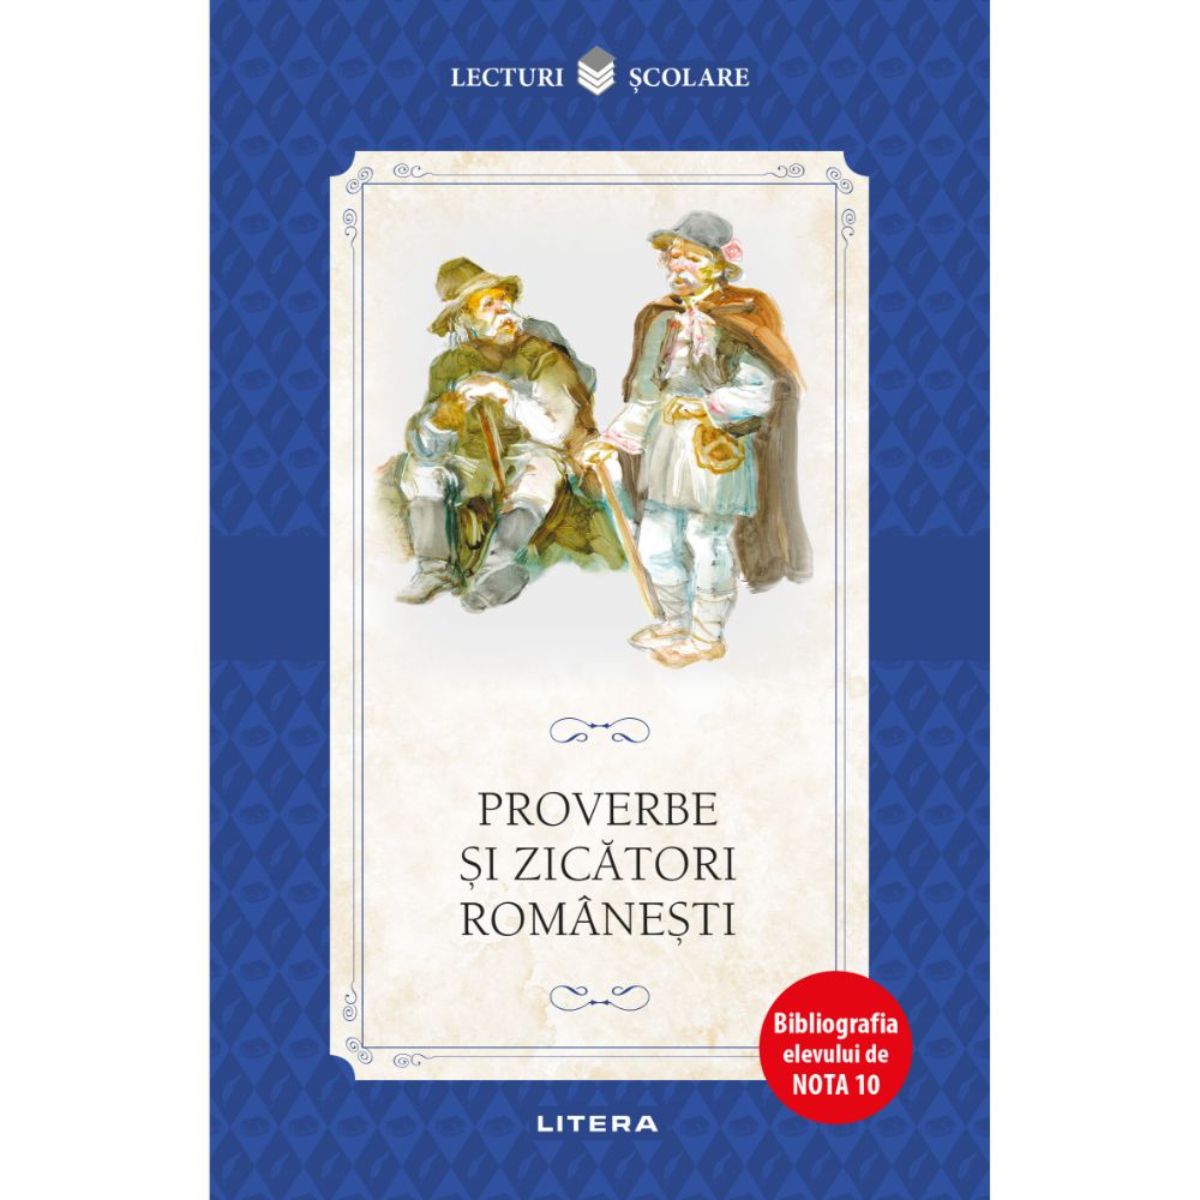 Proverbe si zicatori romanesti, Editie noua